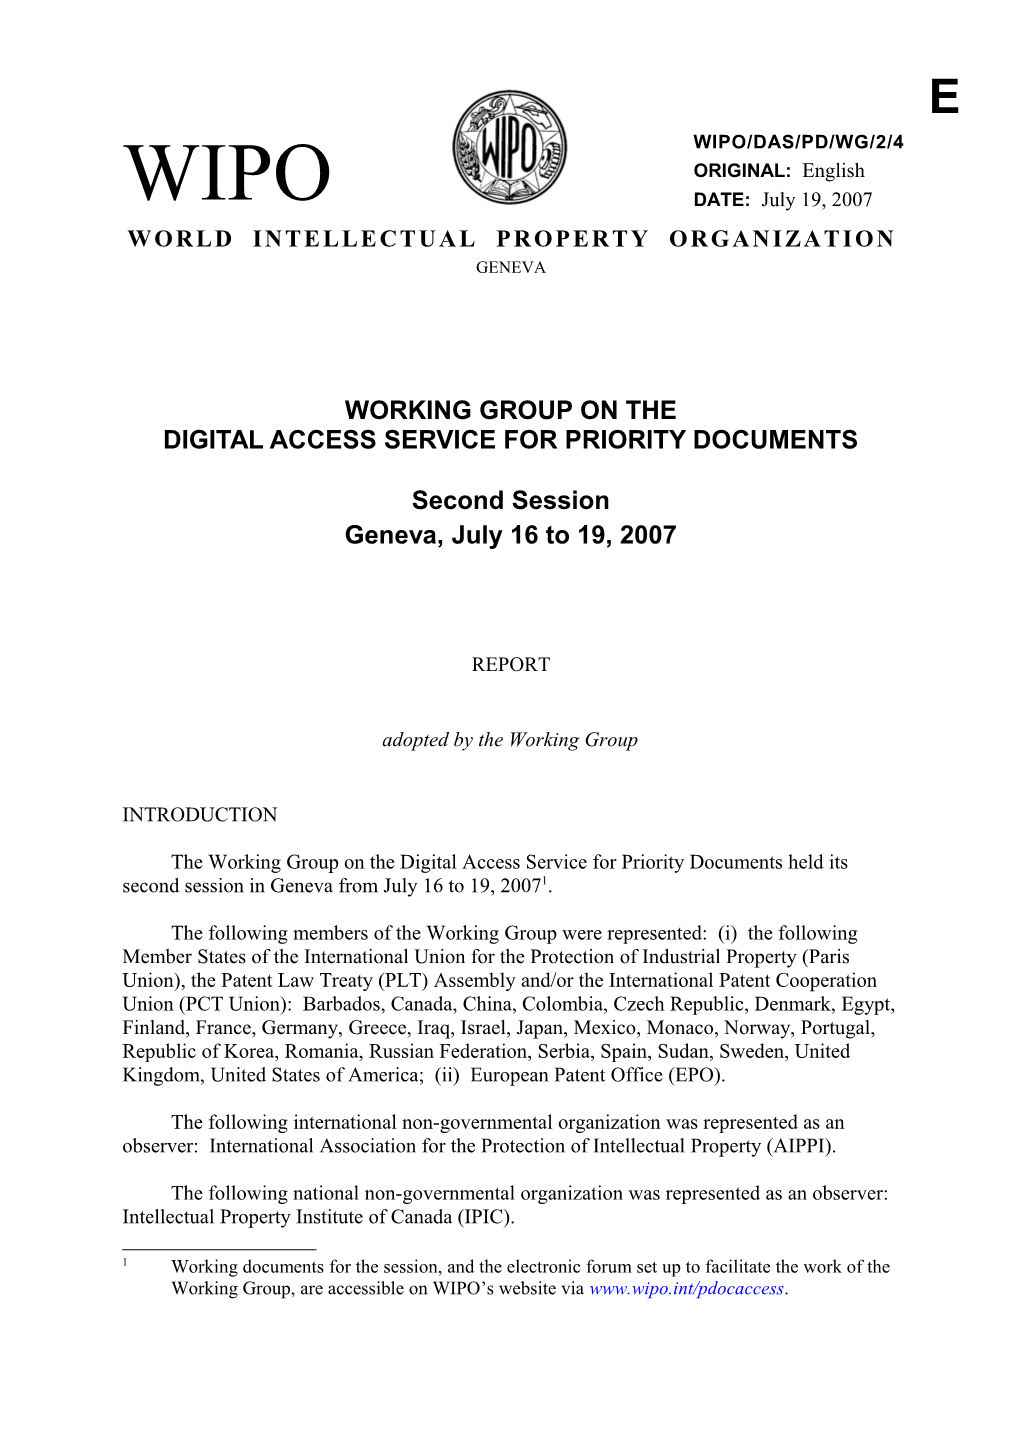 WIPO/DAS/PD/WG/2/4: Report